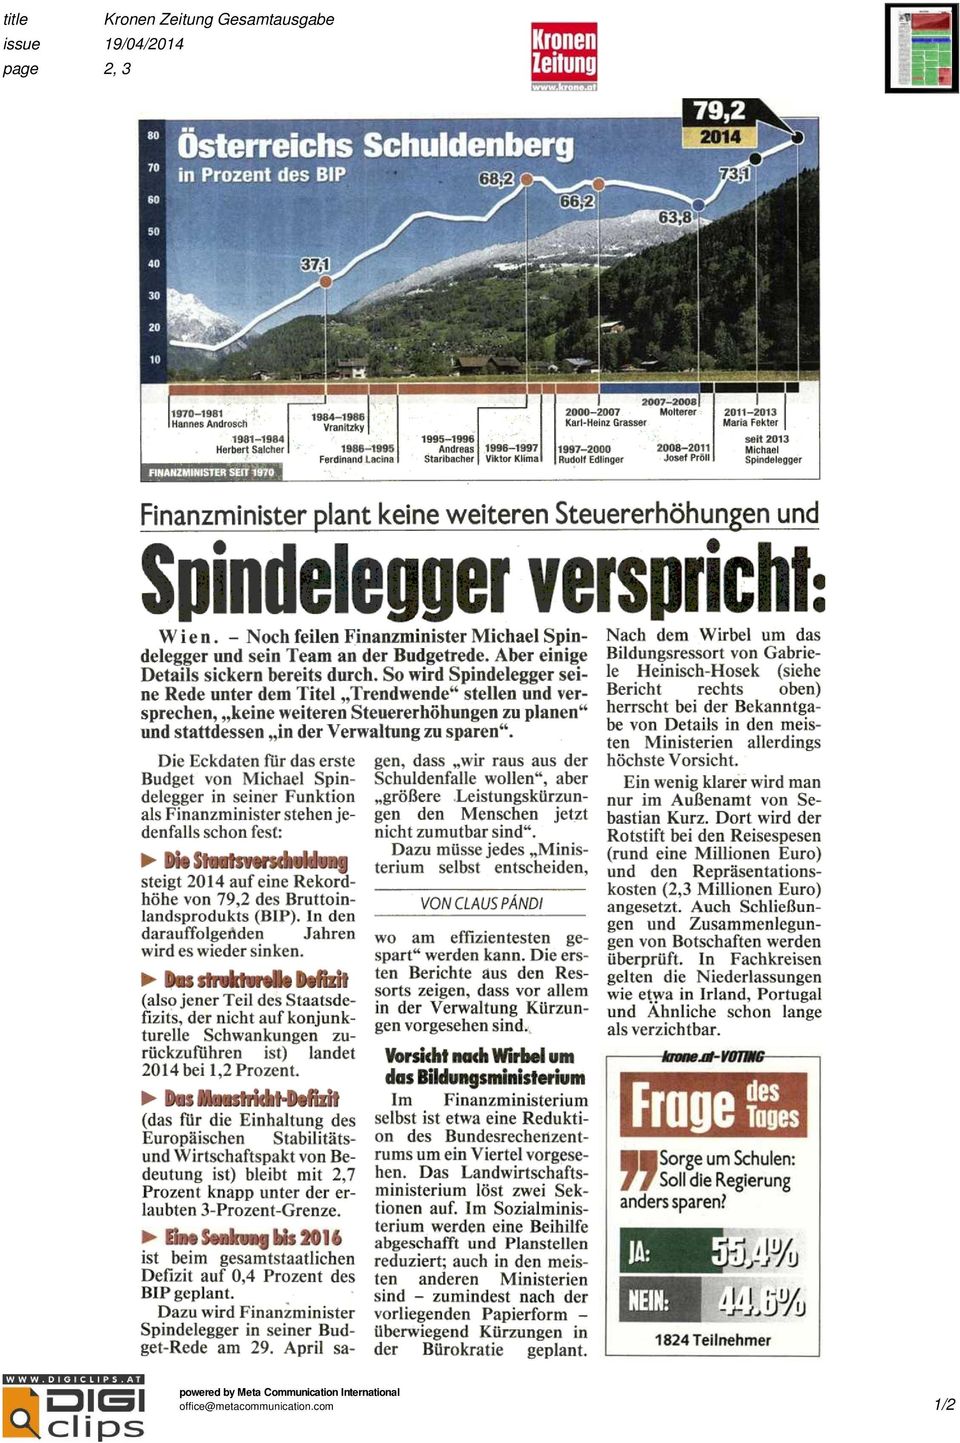 Steuererhöhungen und Spindelegger verspricht: Wien. Nch feilen Finanzminister Michael Spindelegger und sein Team an der Budgetrede. Aber einige Details sickern bereits durch.